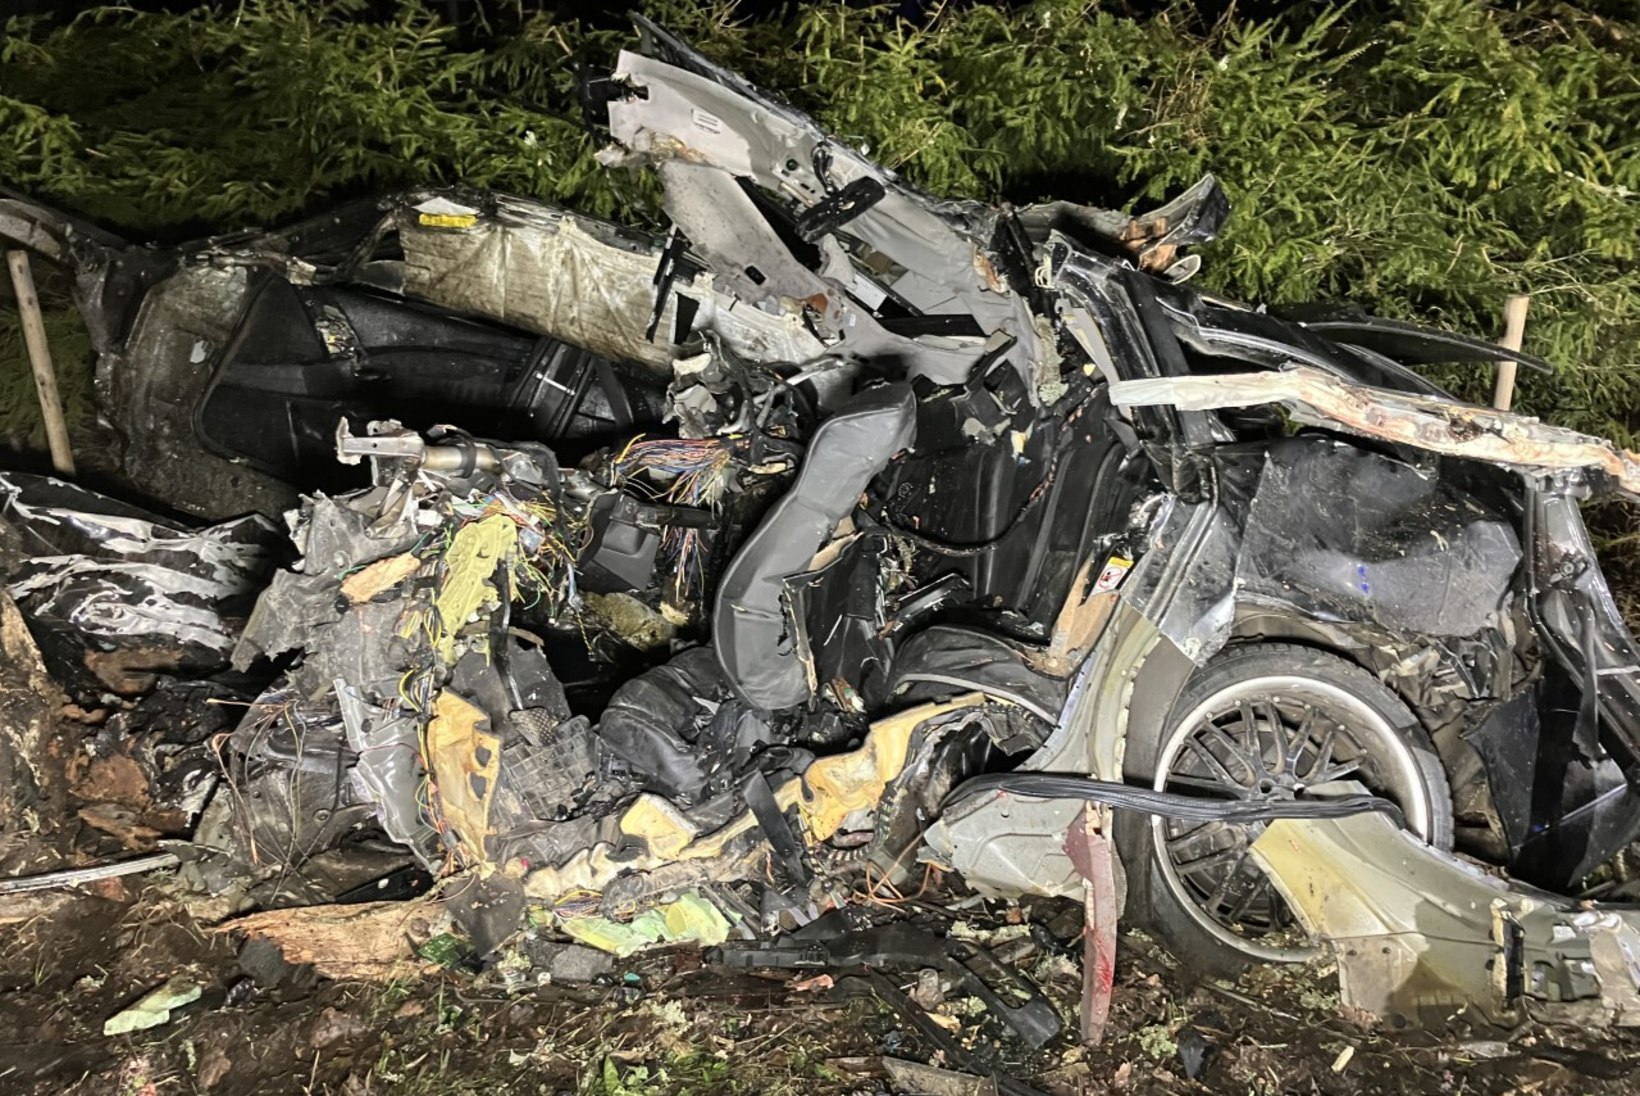 Ränk õnnetus: vastu puud kihutanud autos hukkus kaks noormeest 